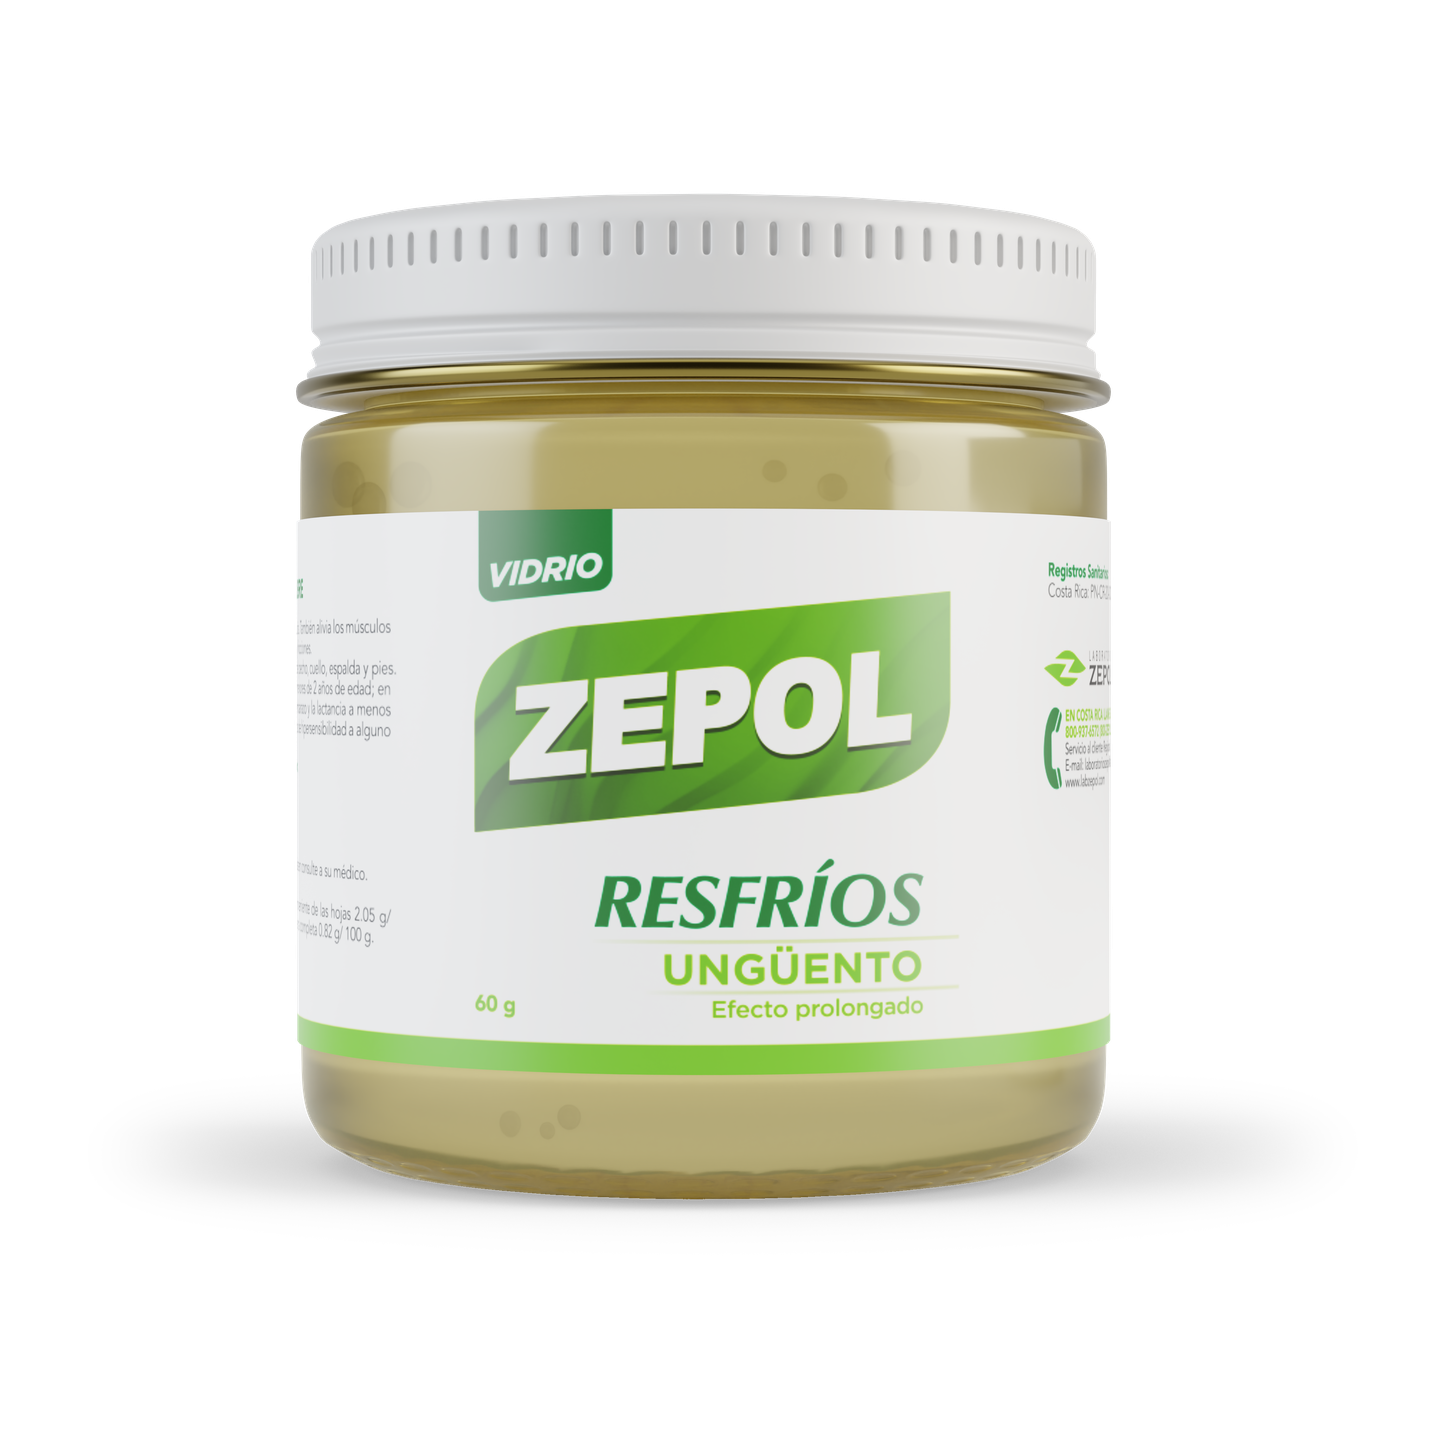 En 1951 el ungüento balsámico, Zepol, se comenzó a envasar industrialmente, sin embargo, el farmacéutico venezolano, Luis Alejandro López, lo inventó desde 1926, o sea, que para el 2021, cumple 95 de haberse creado